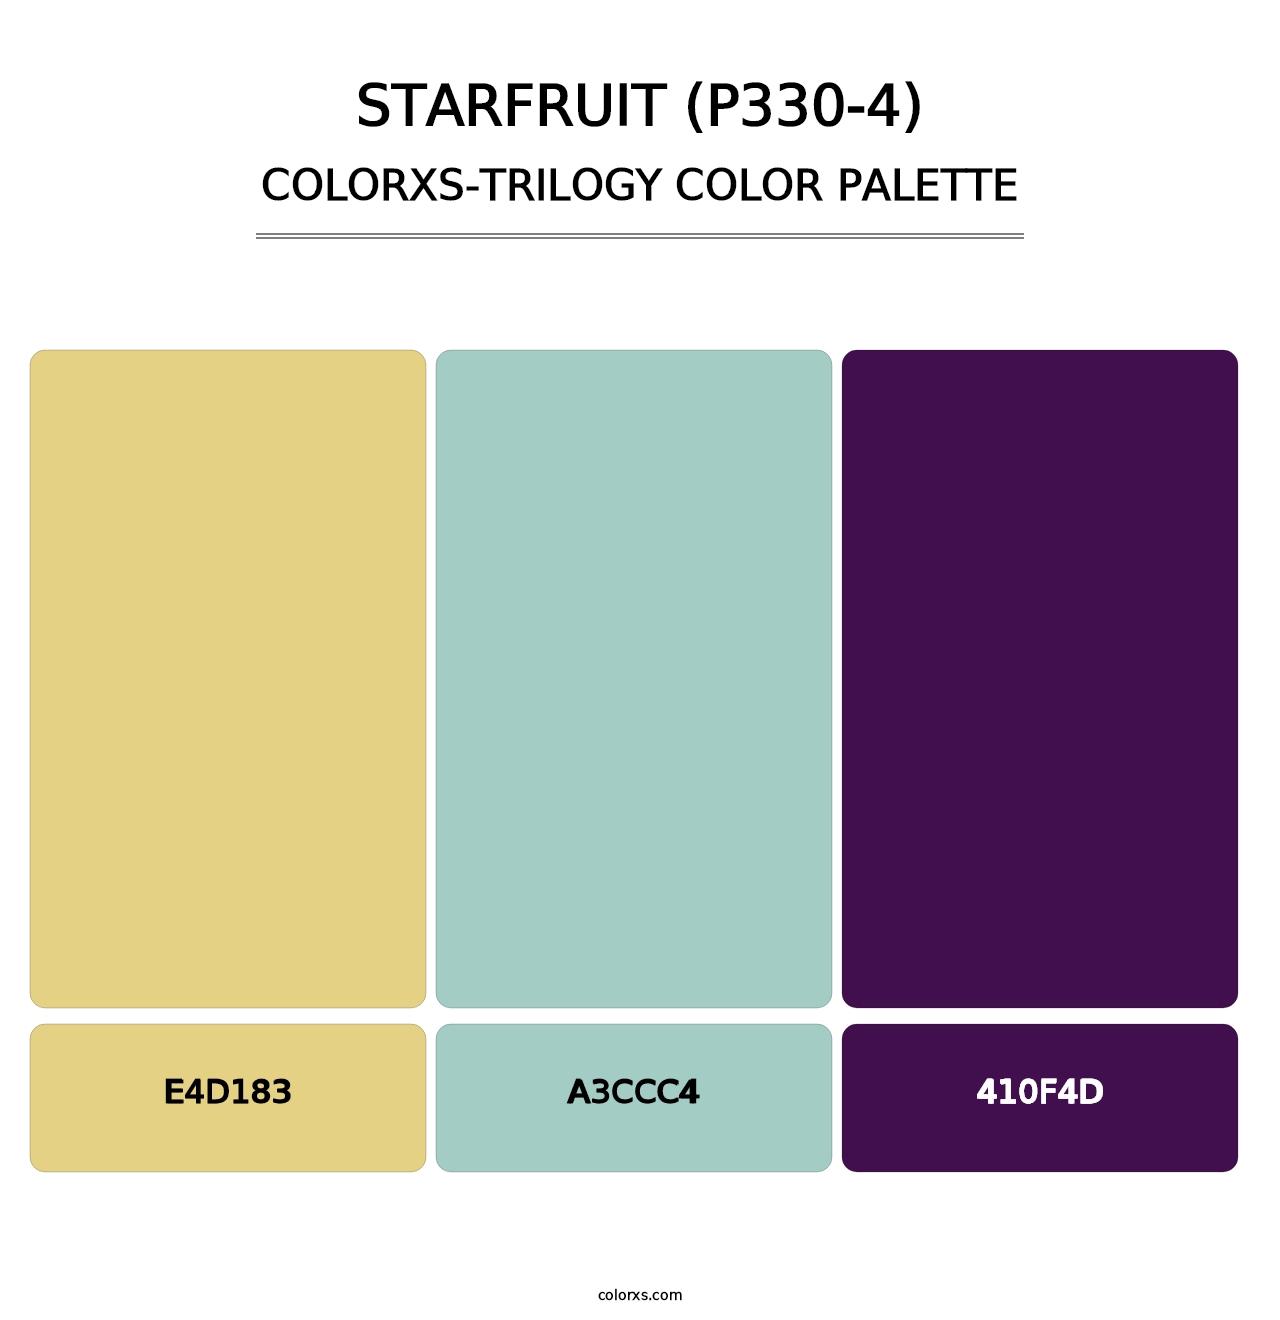 Starfruit (P330-4) - Colorxs Trilogy Palette